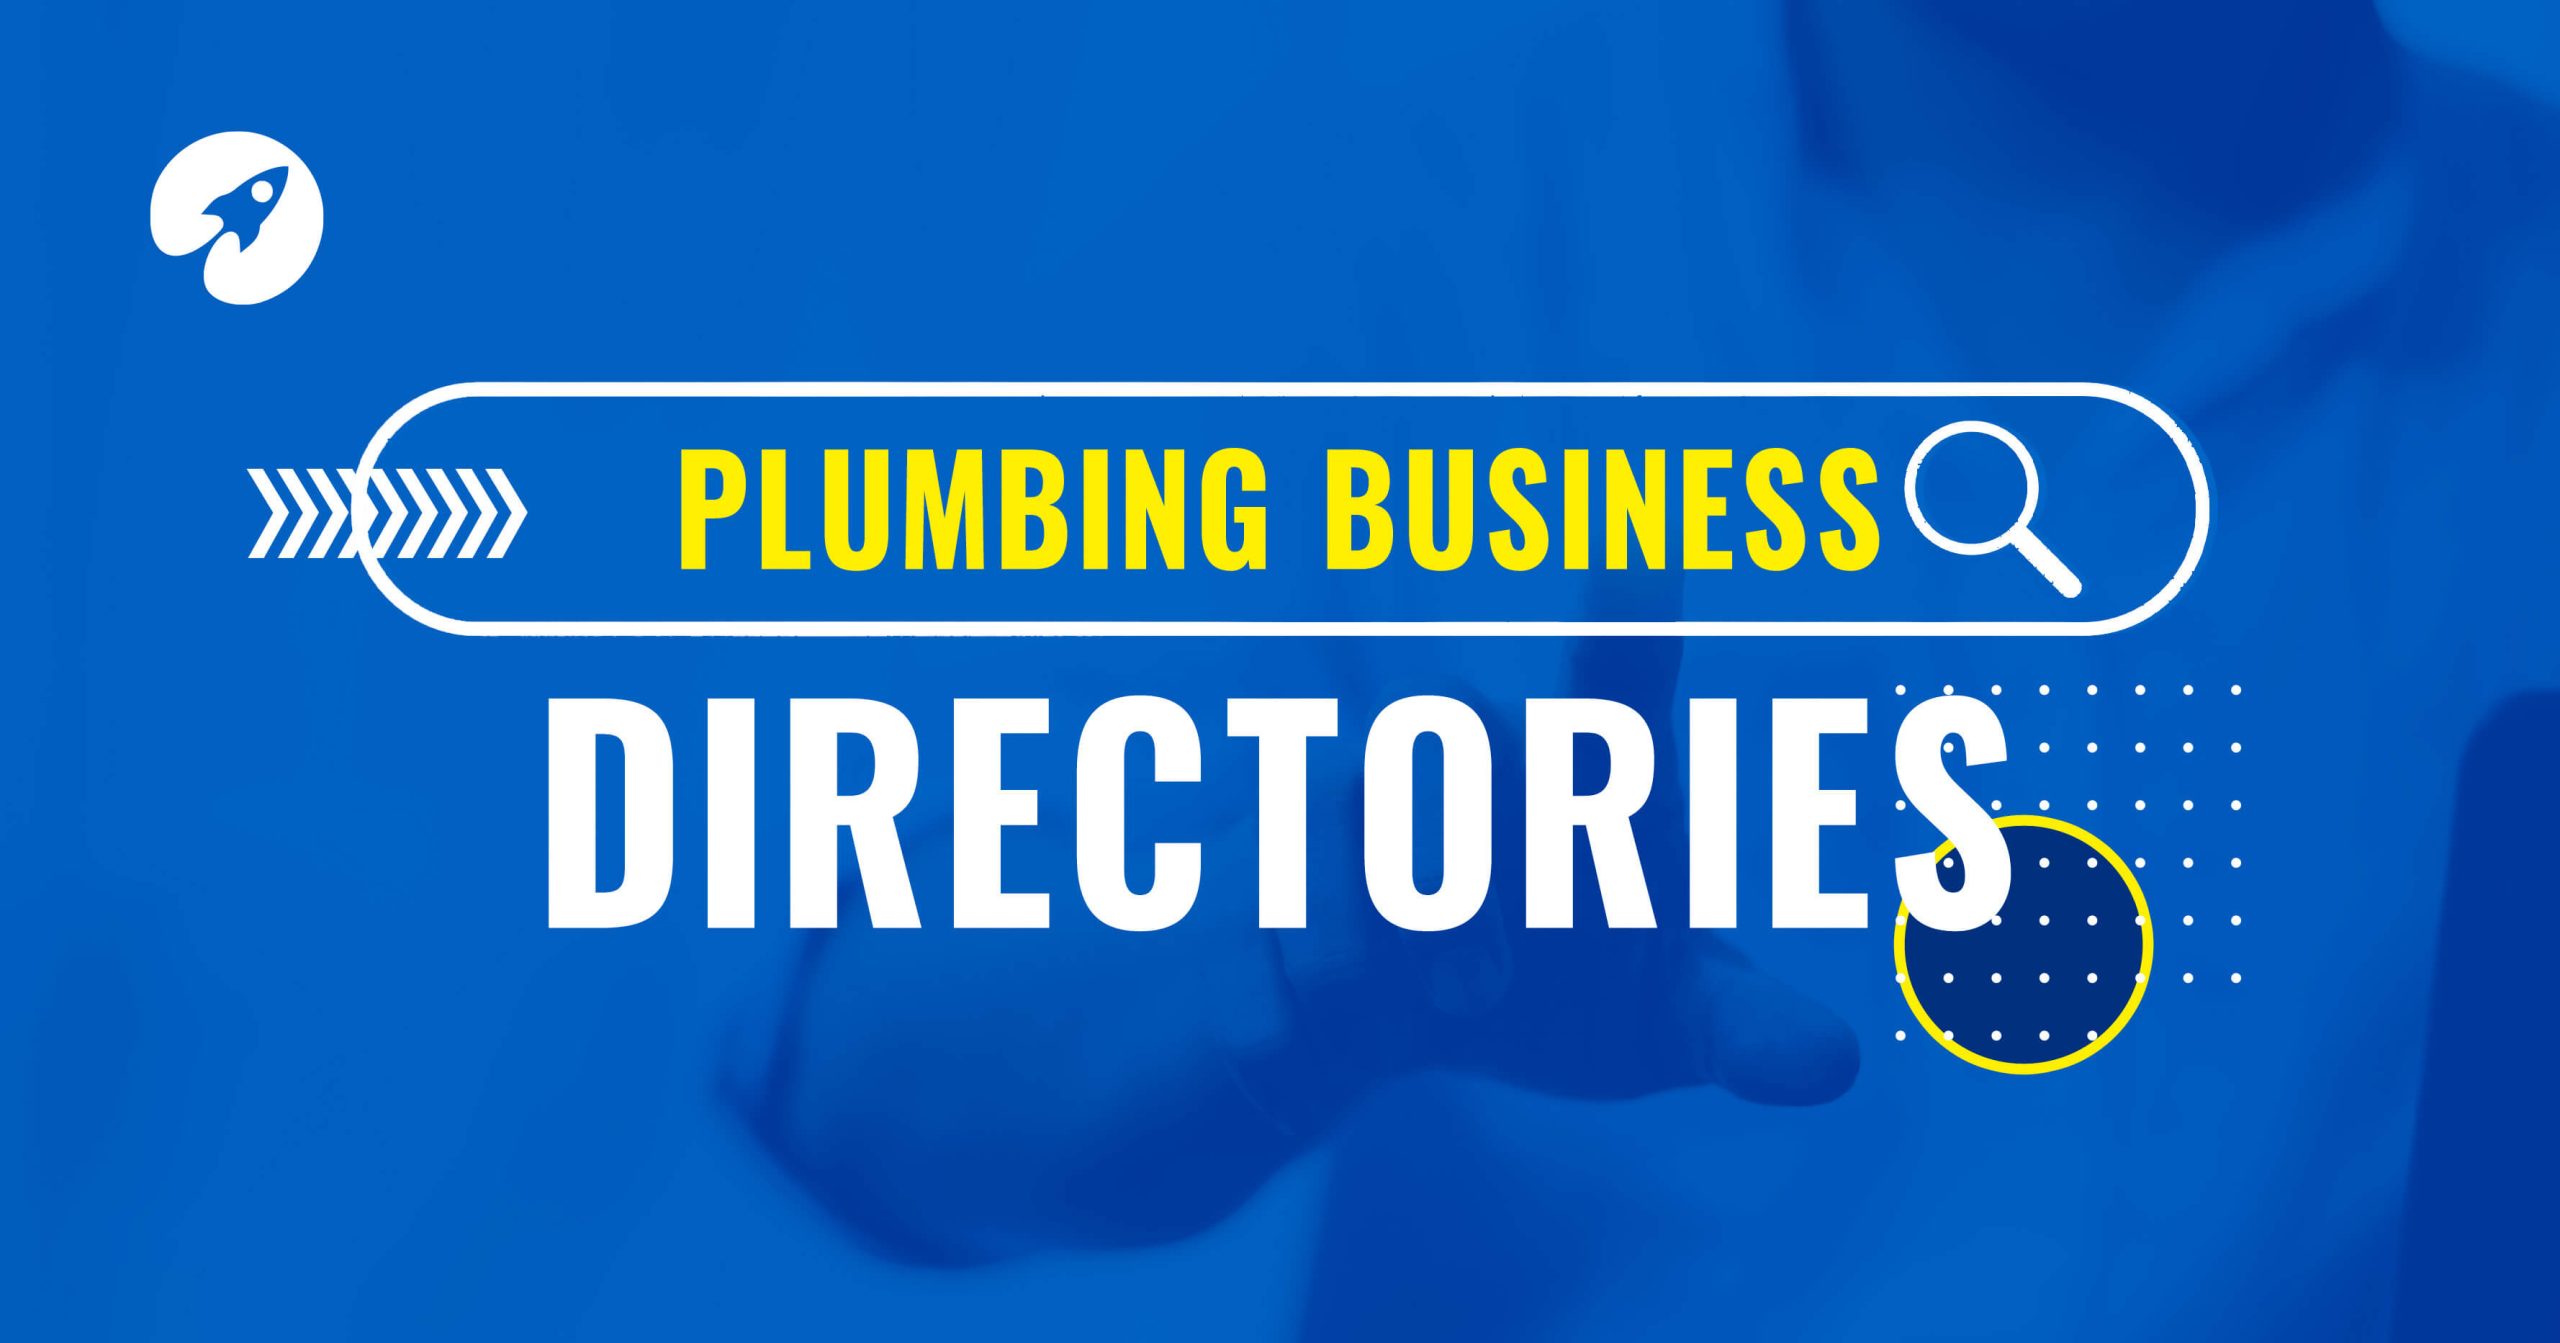 Plumbing business directories